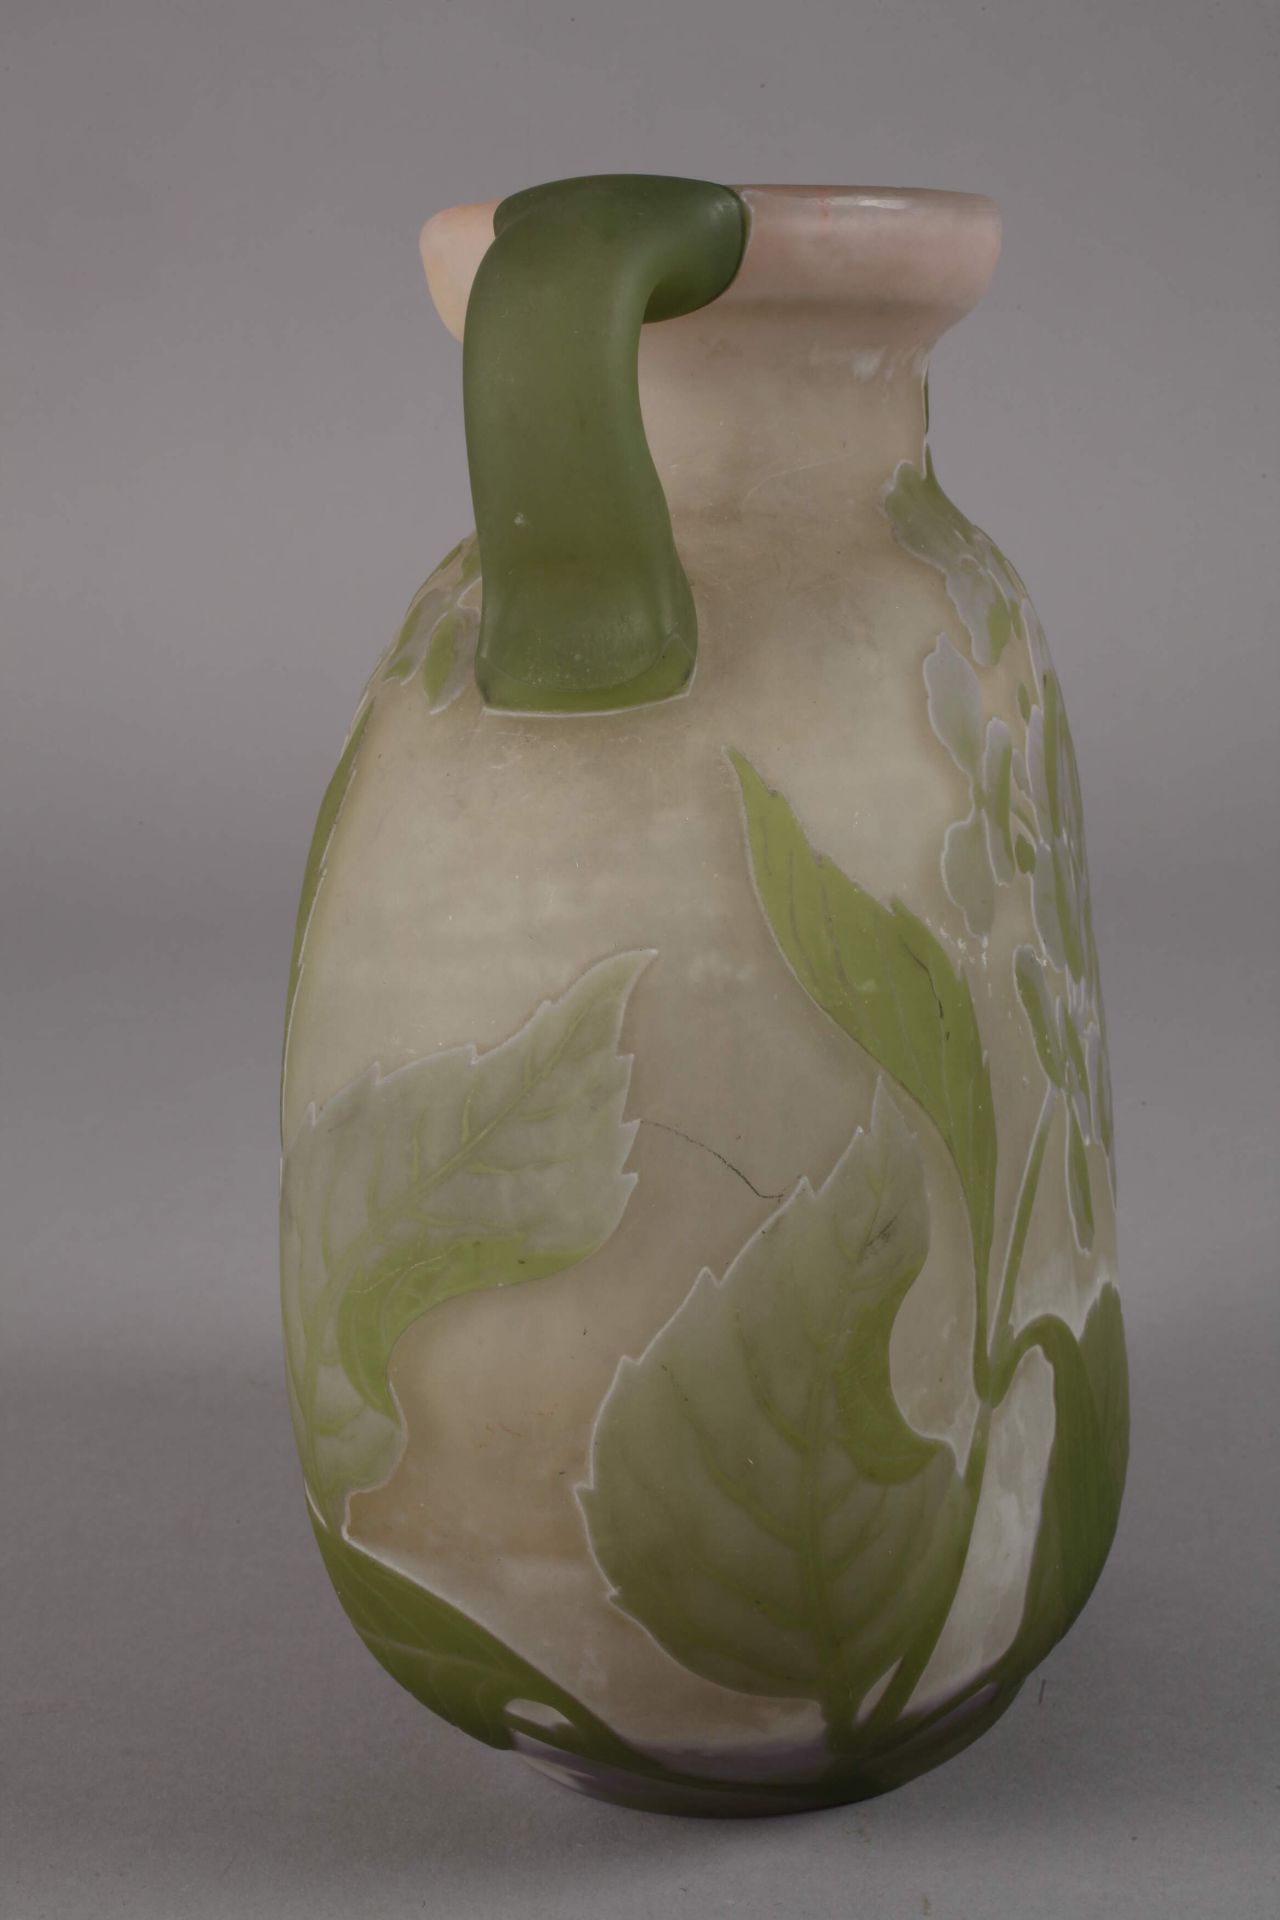 Handled vase Émile Gallé - Image 2 of 4